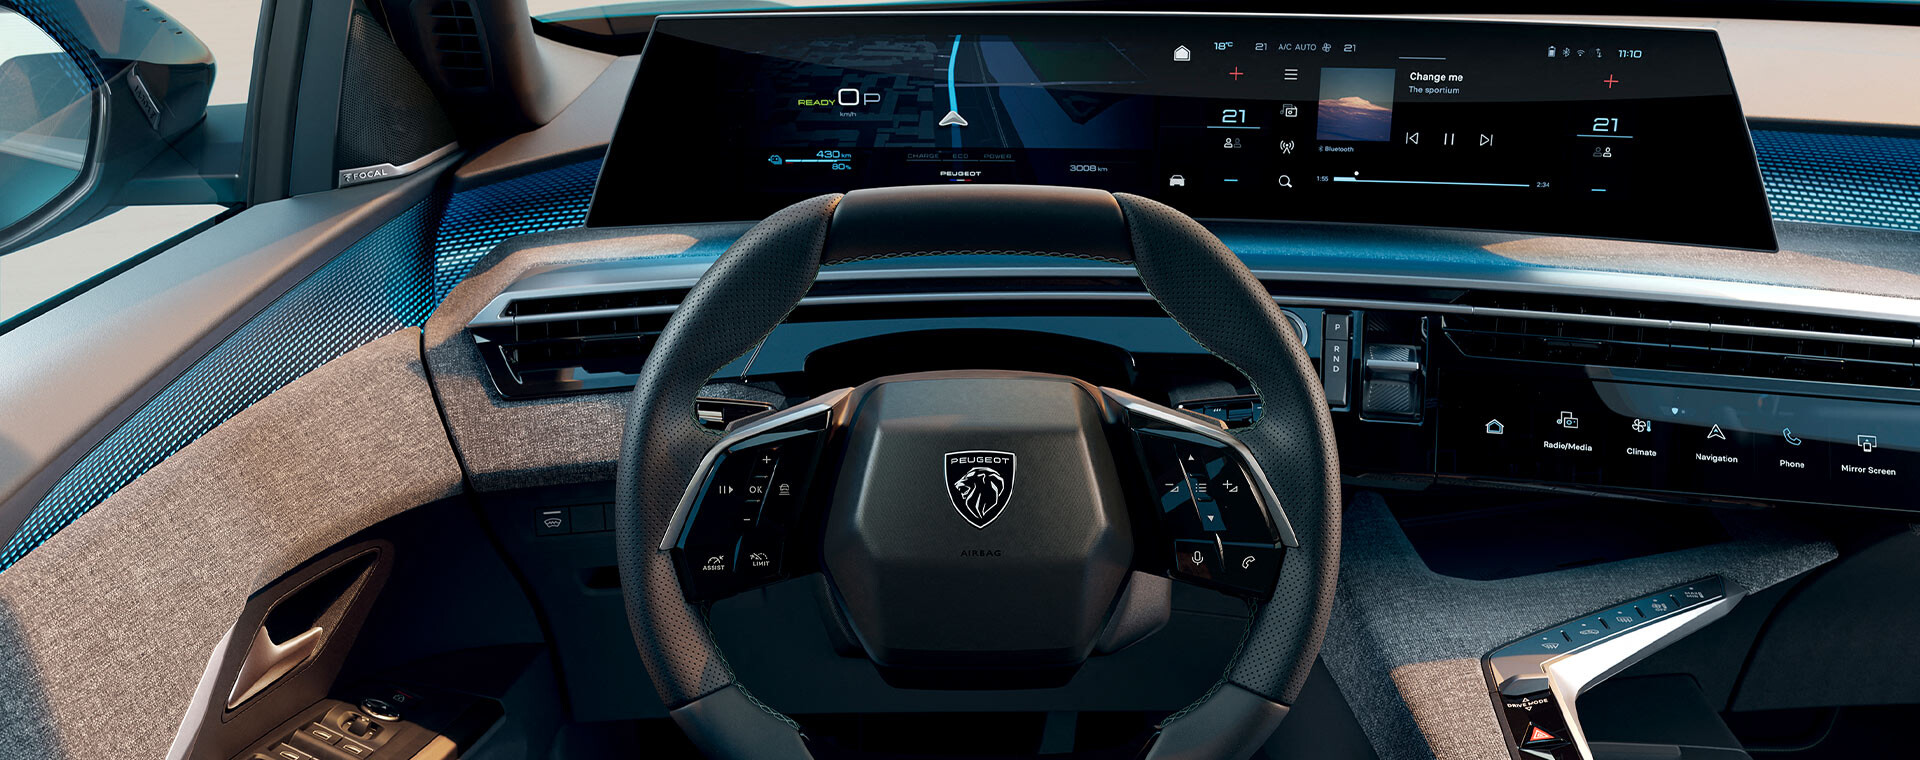 Megmutatták az új Peugeot panoráma i-Cockpit-ot